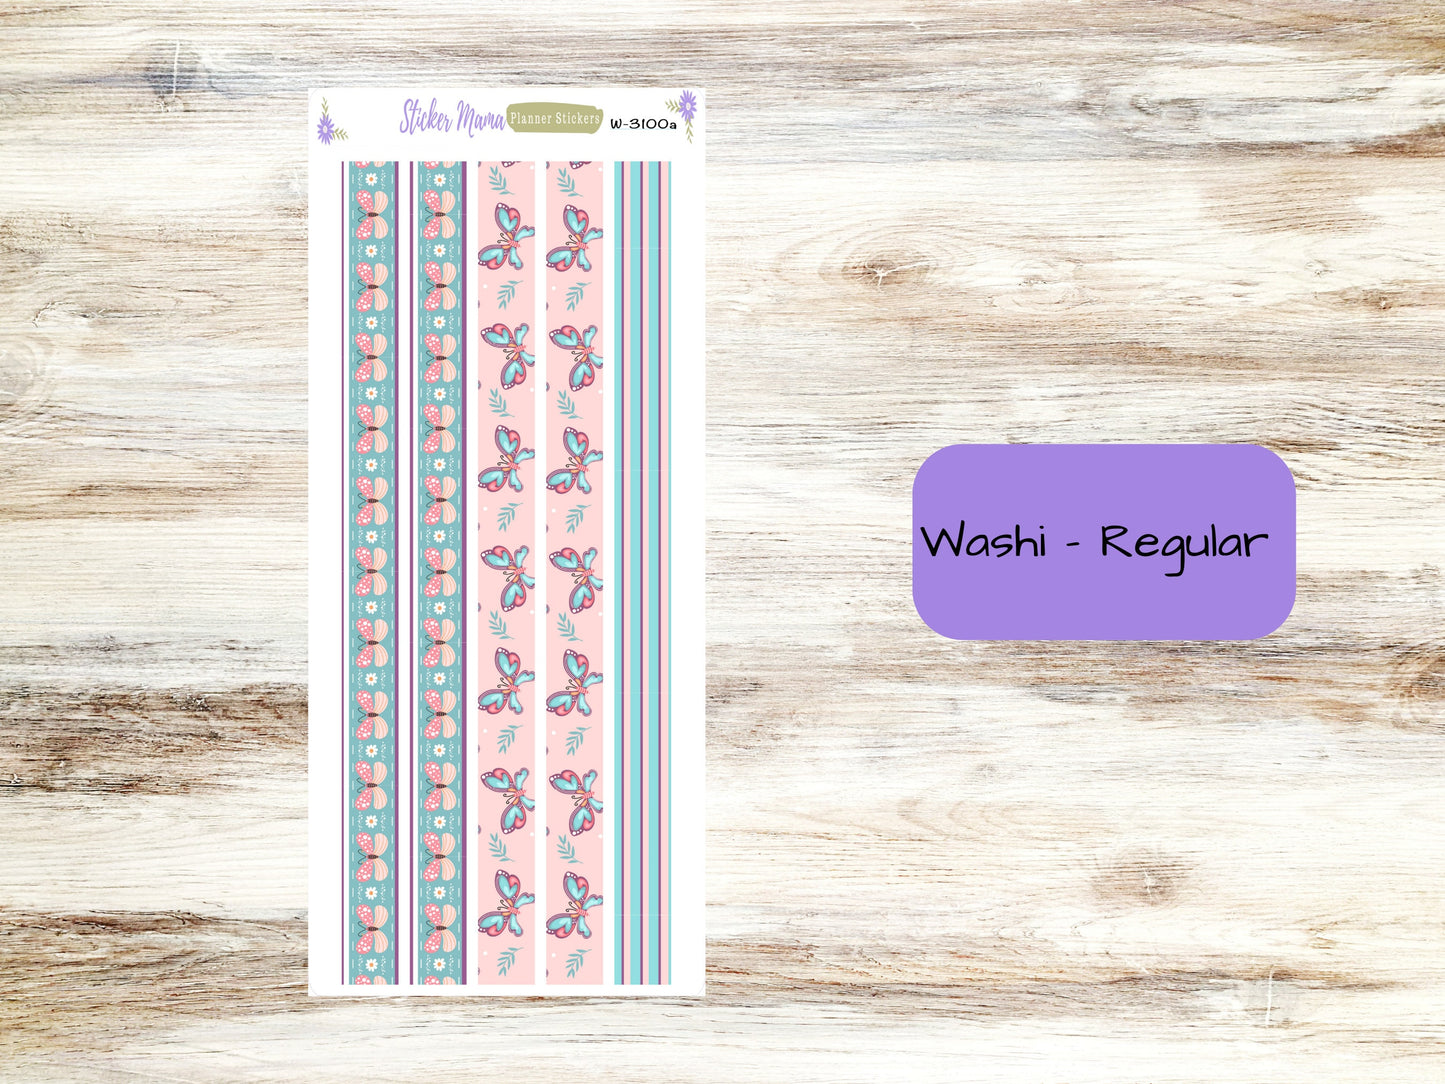 WASHI PLANNER STICKERS || 3100 || Little Beauty Butterfly || Washi Stickers || Planner Stickers || Washi for Planners